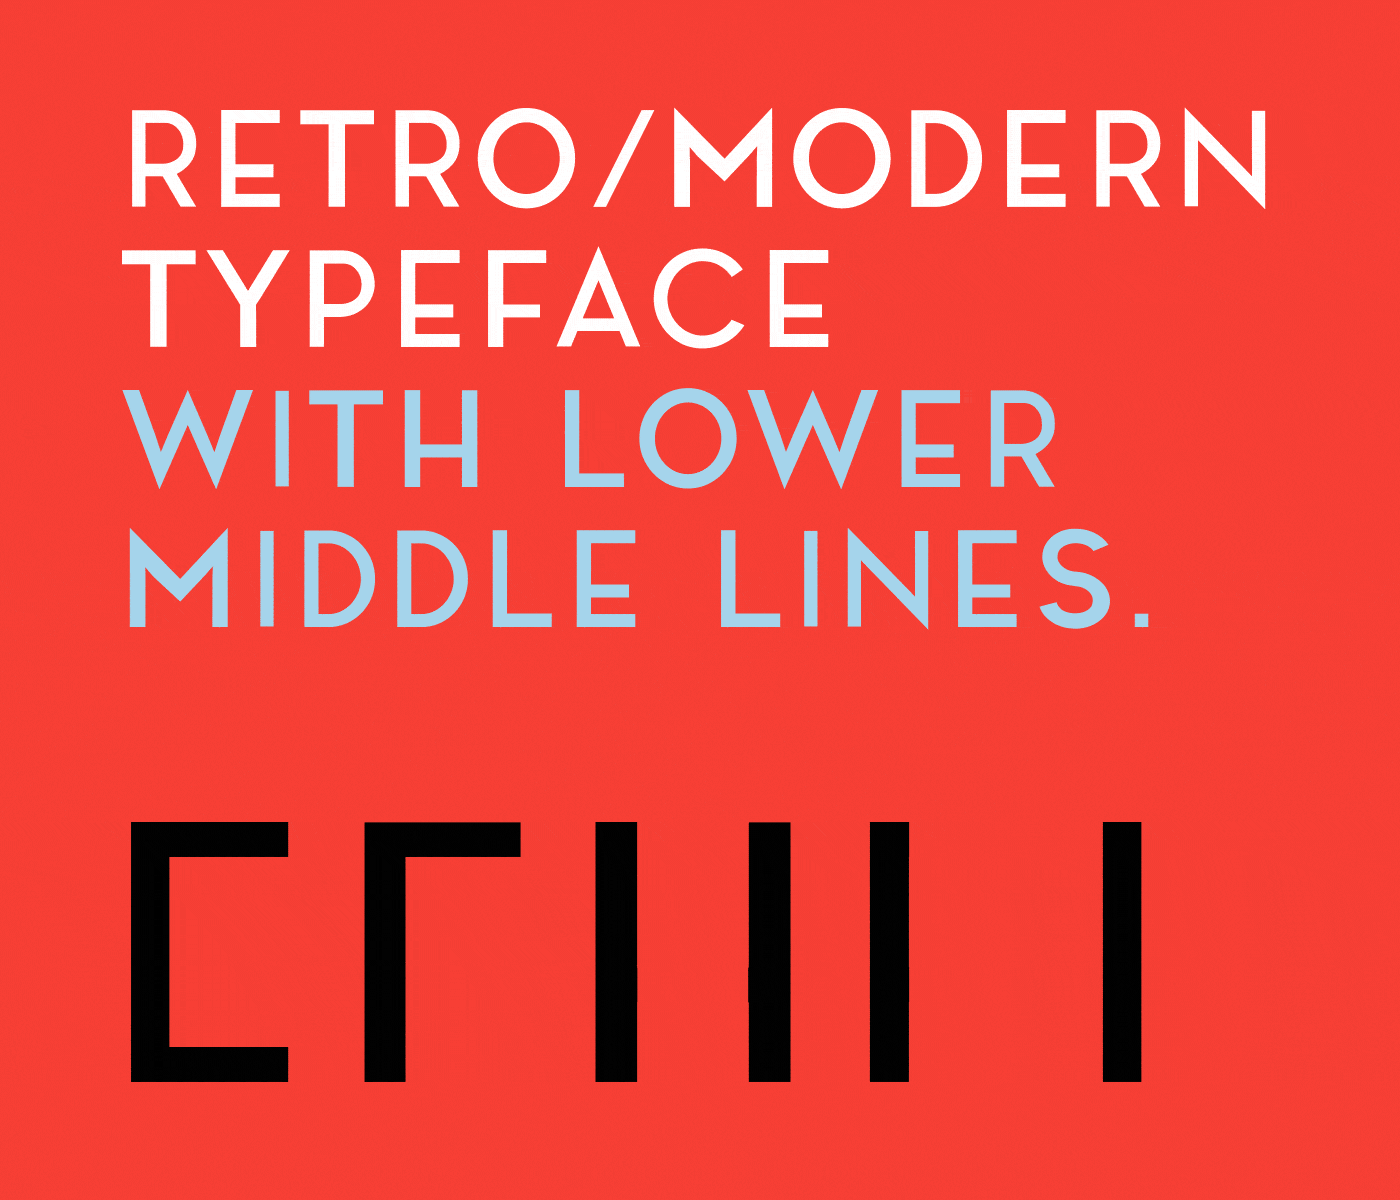 版式排版设计英文无衬线字体 Noir Free Typeface插图(1)